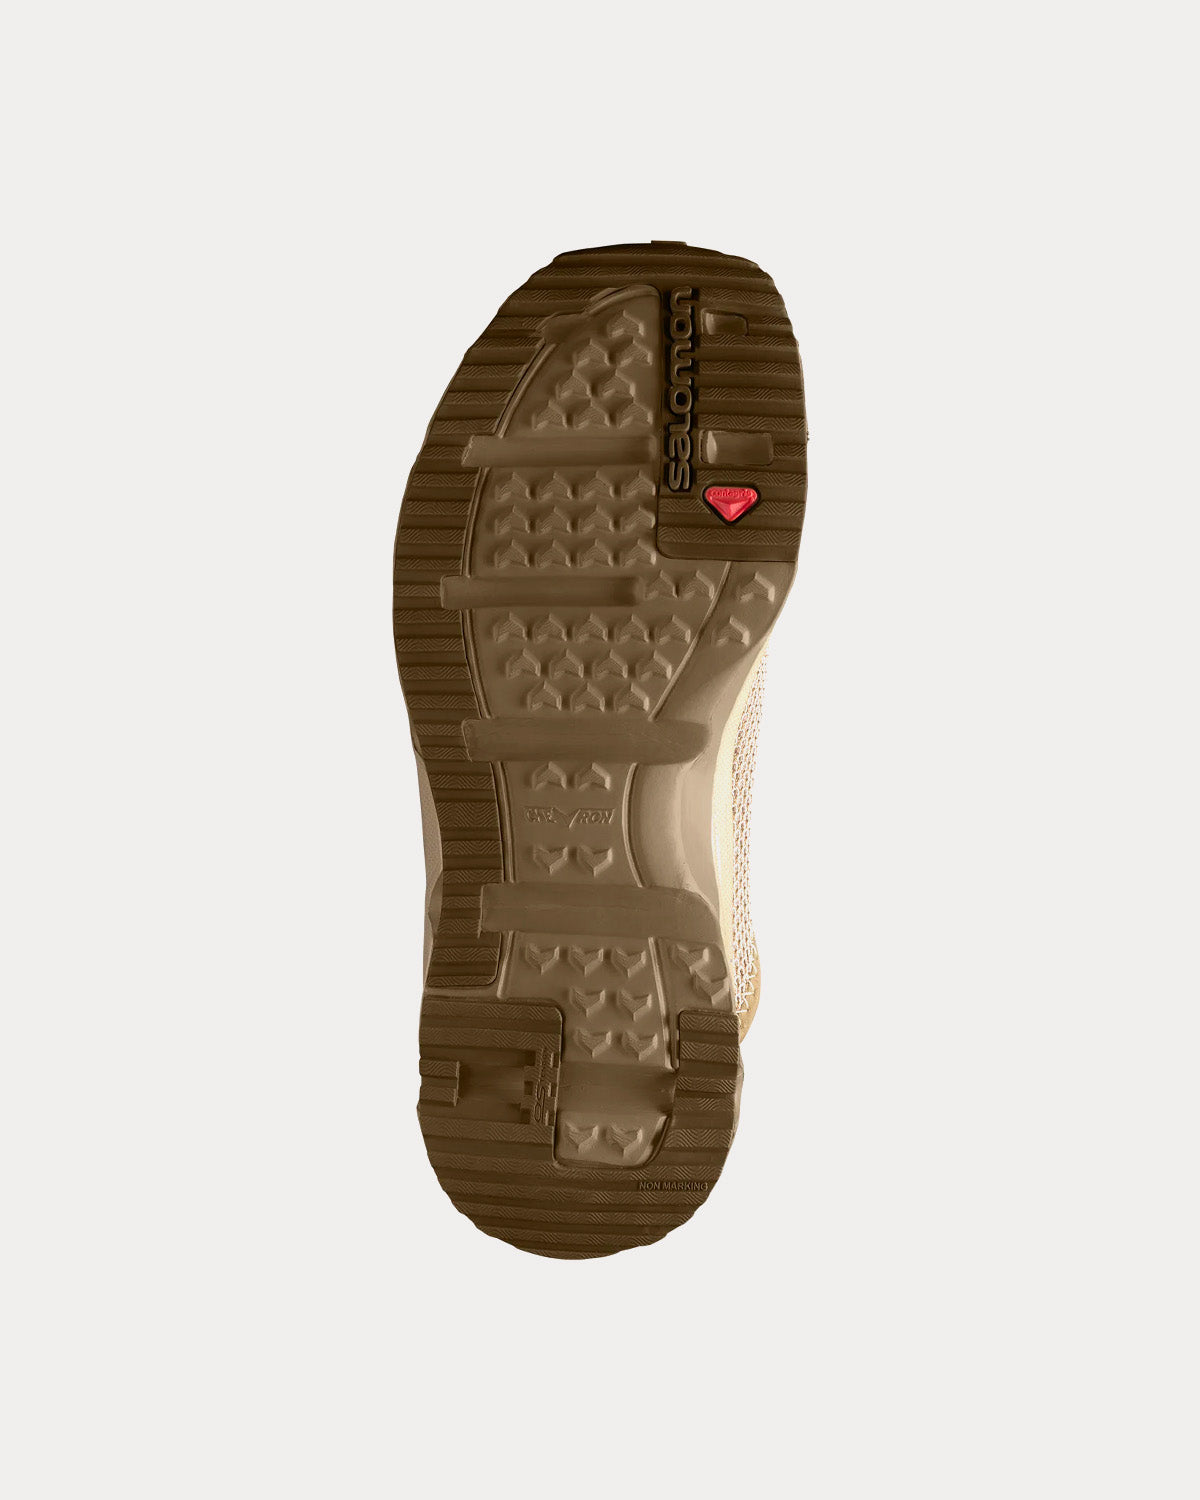 Salomon x BEAMS - RX Slide 3.0 'Flowers' Safari / Kangaroo / Toasted Coconut Slip On Sneakers